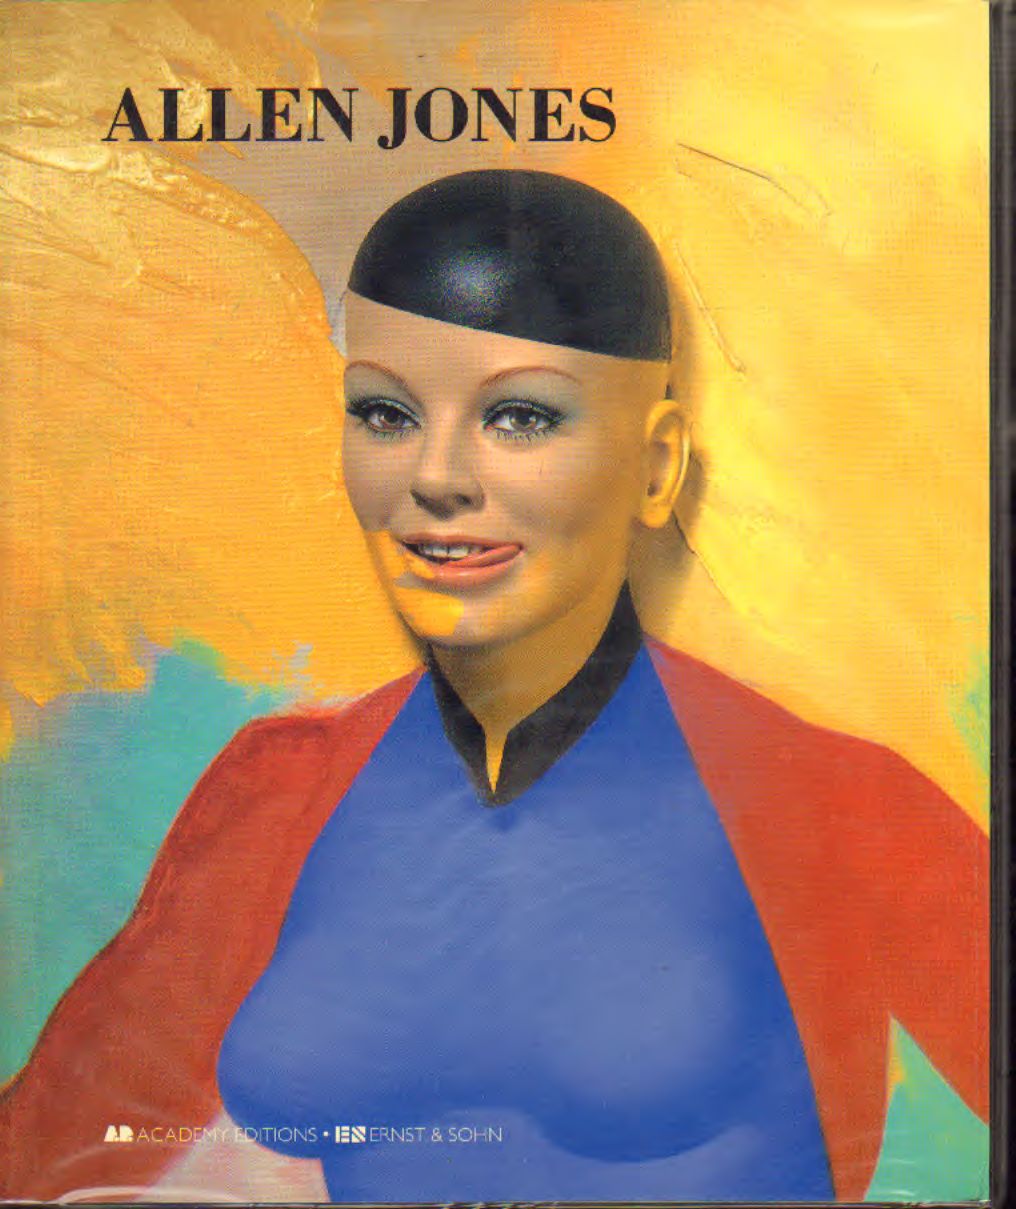 Allen Jones - Allen Jones